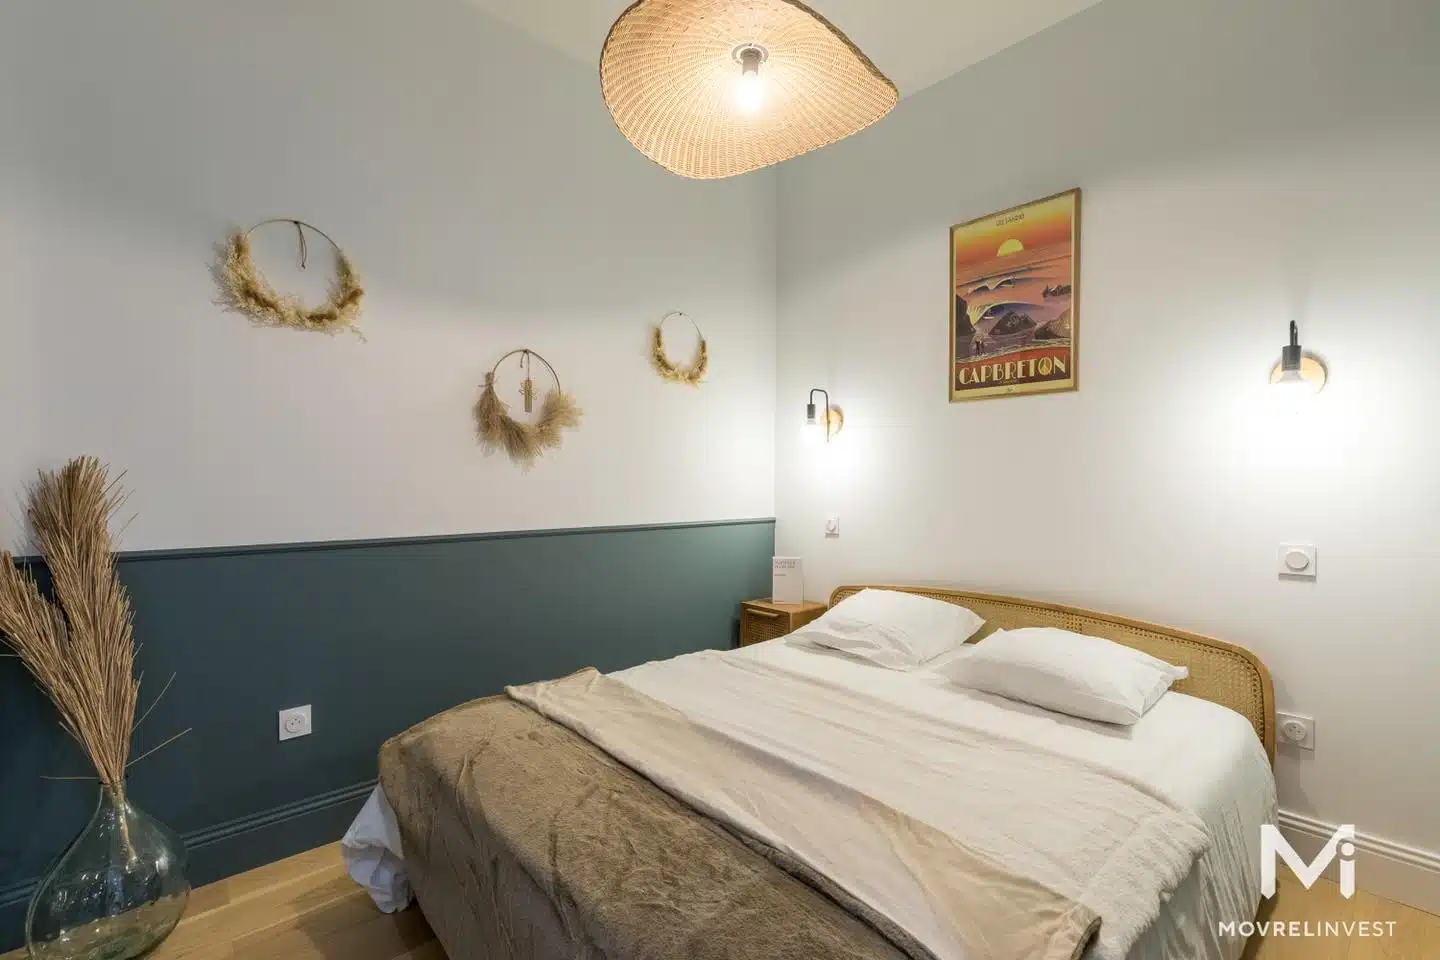 Chambre cosy avec décoration murale et lit double.